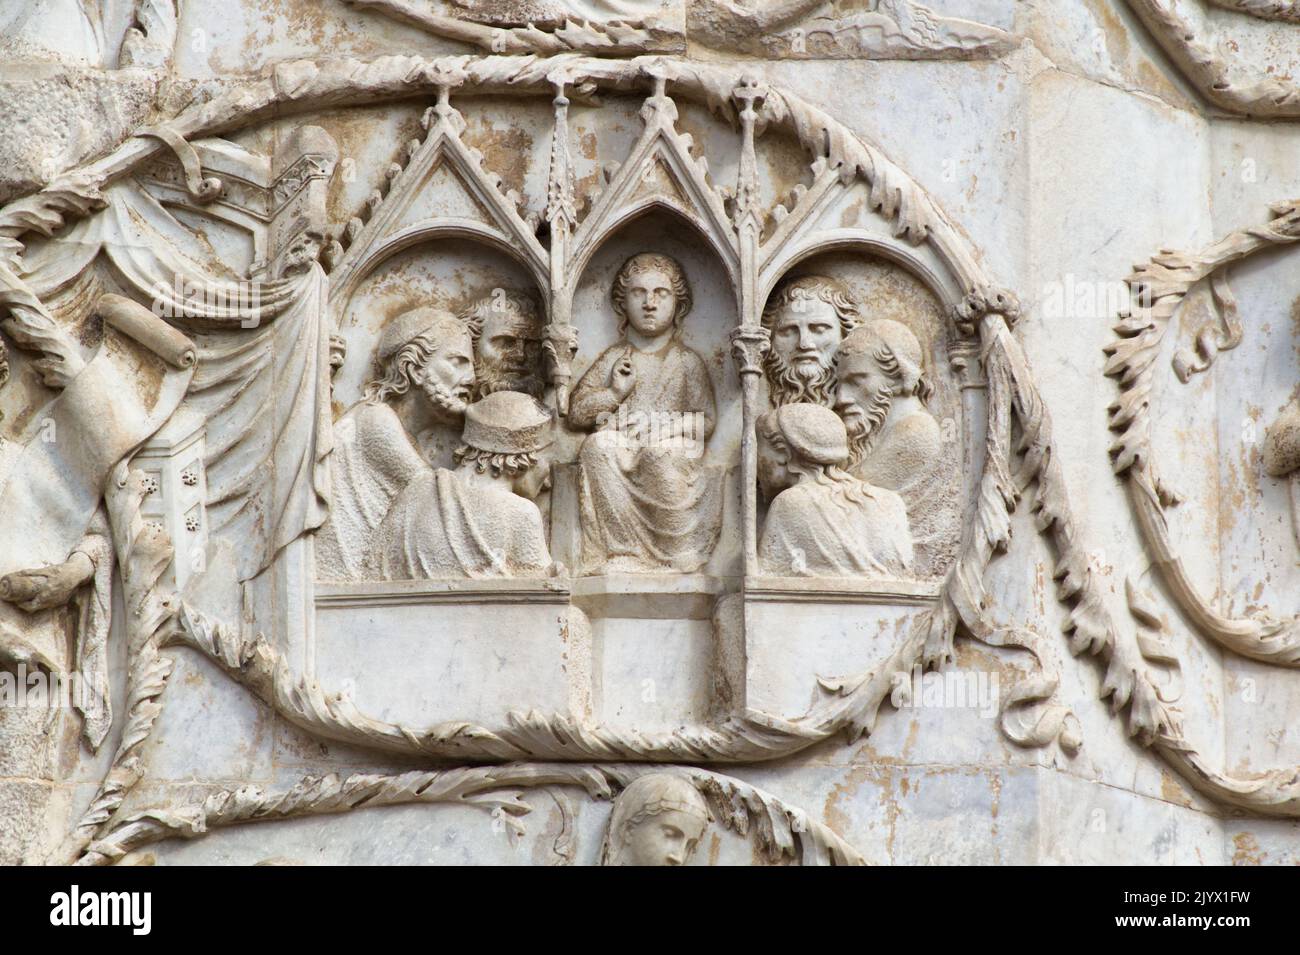 Gesù parla della Legge nel Tempio di Gerusalemme - bassorilievo dal 3th° pilastro (nuovo Testamento) - facciata della cattedrale di Orvieto - Umbria - Italia Foto Stock